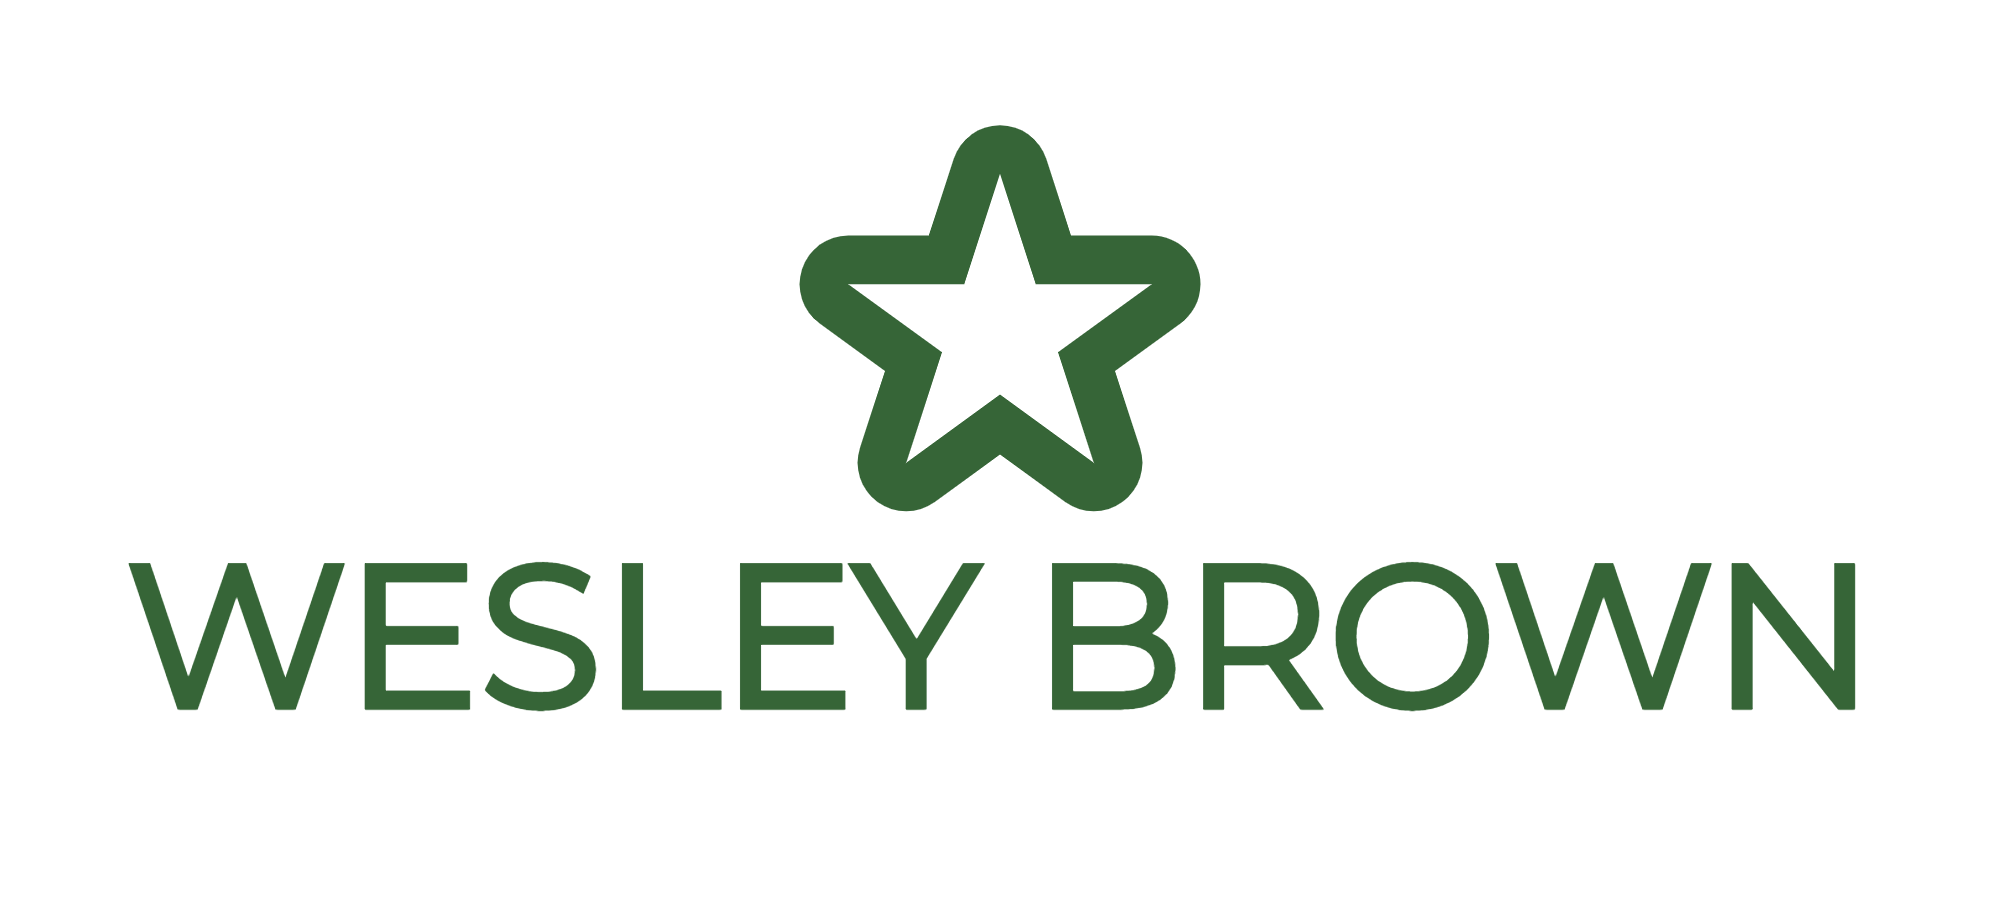 WESLEY BROWN-logo.png